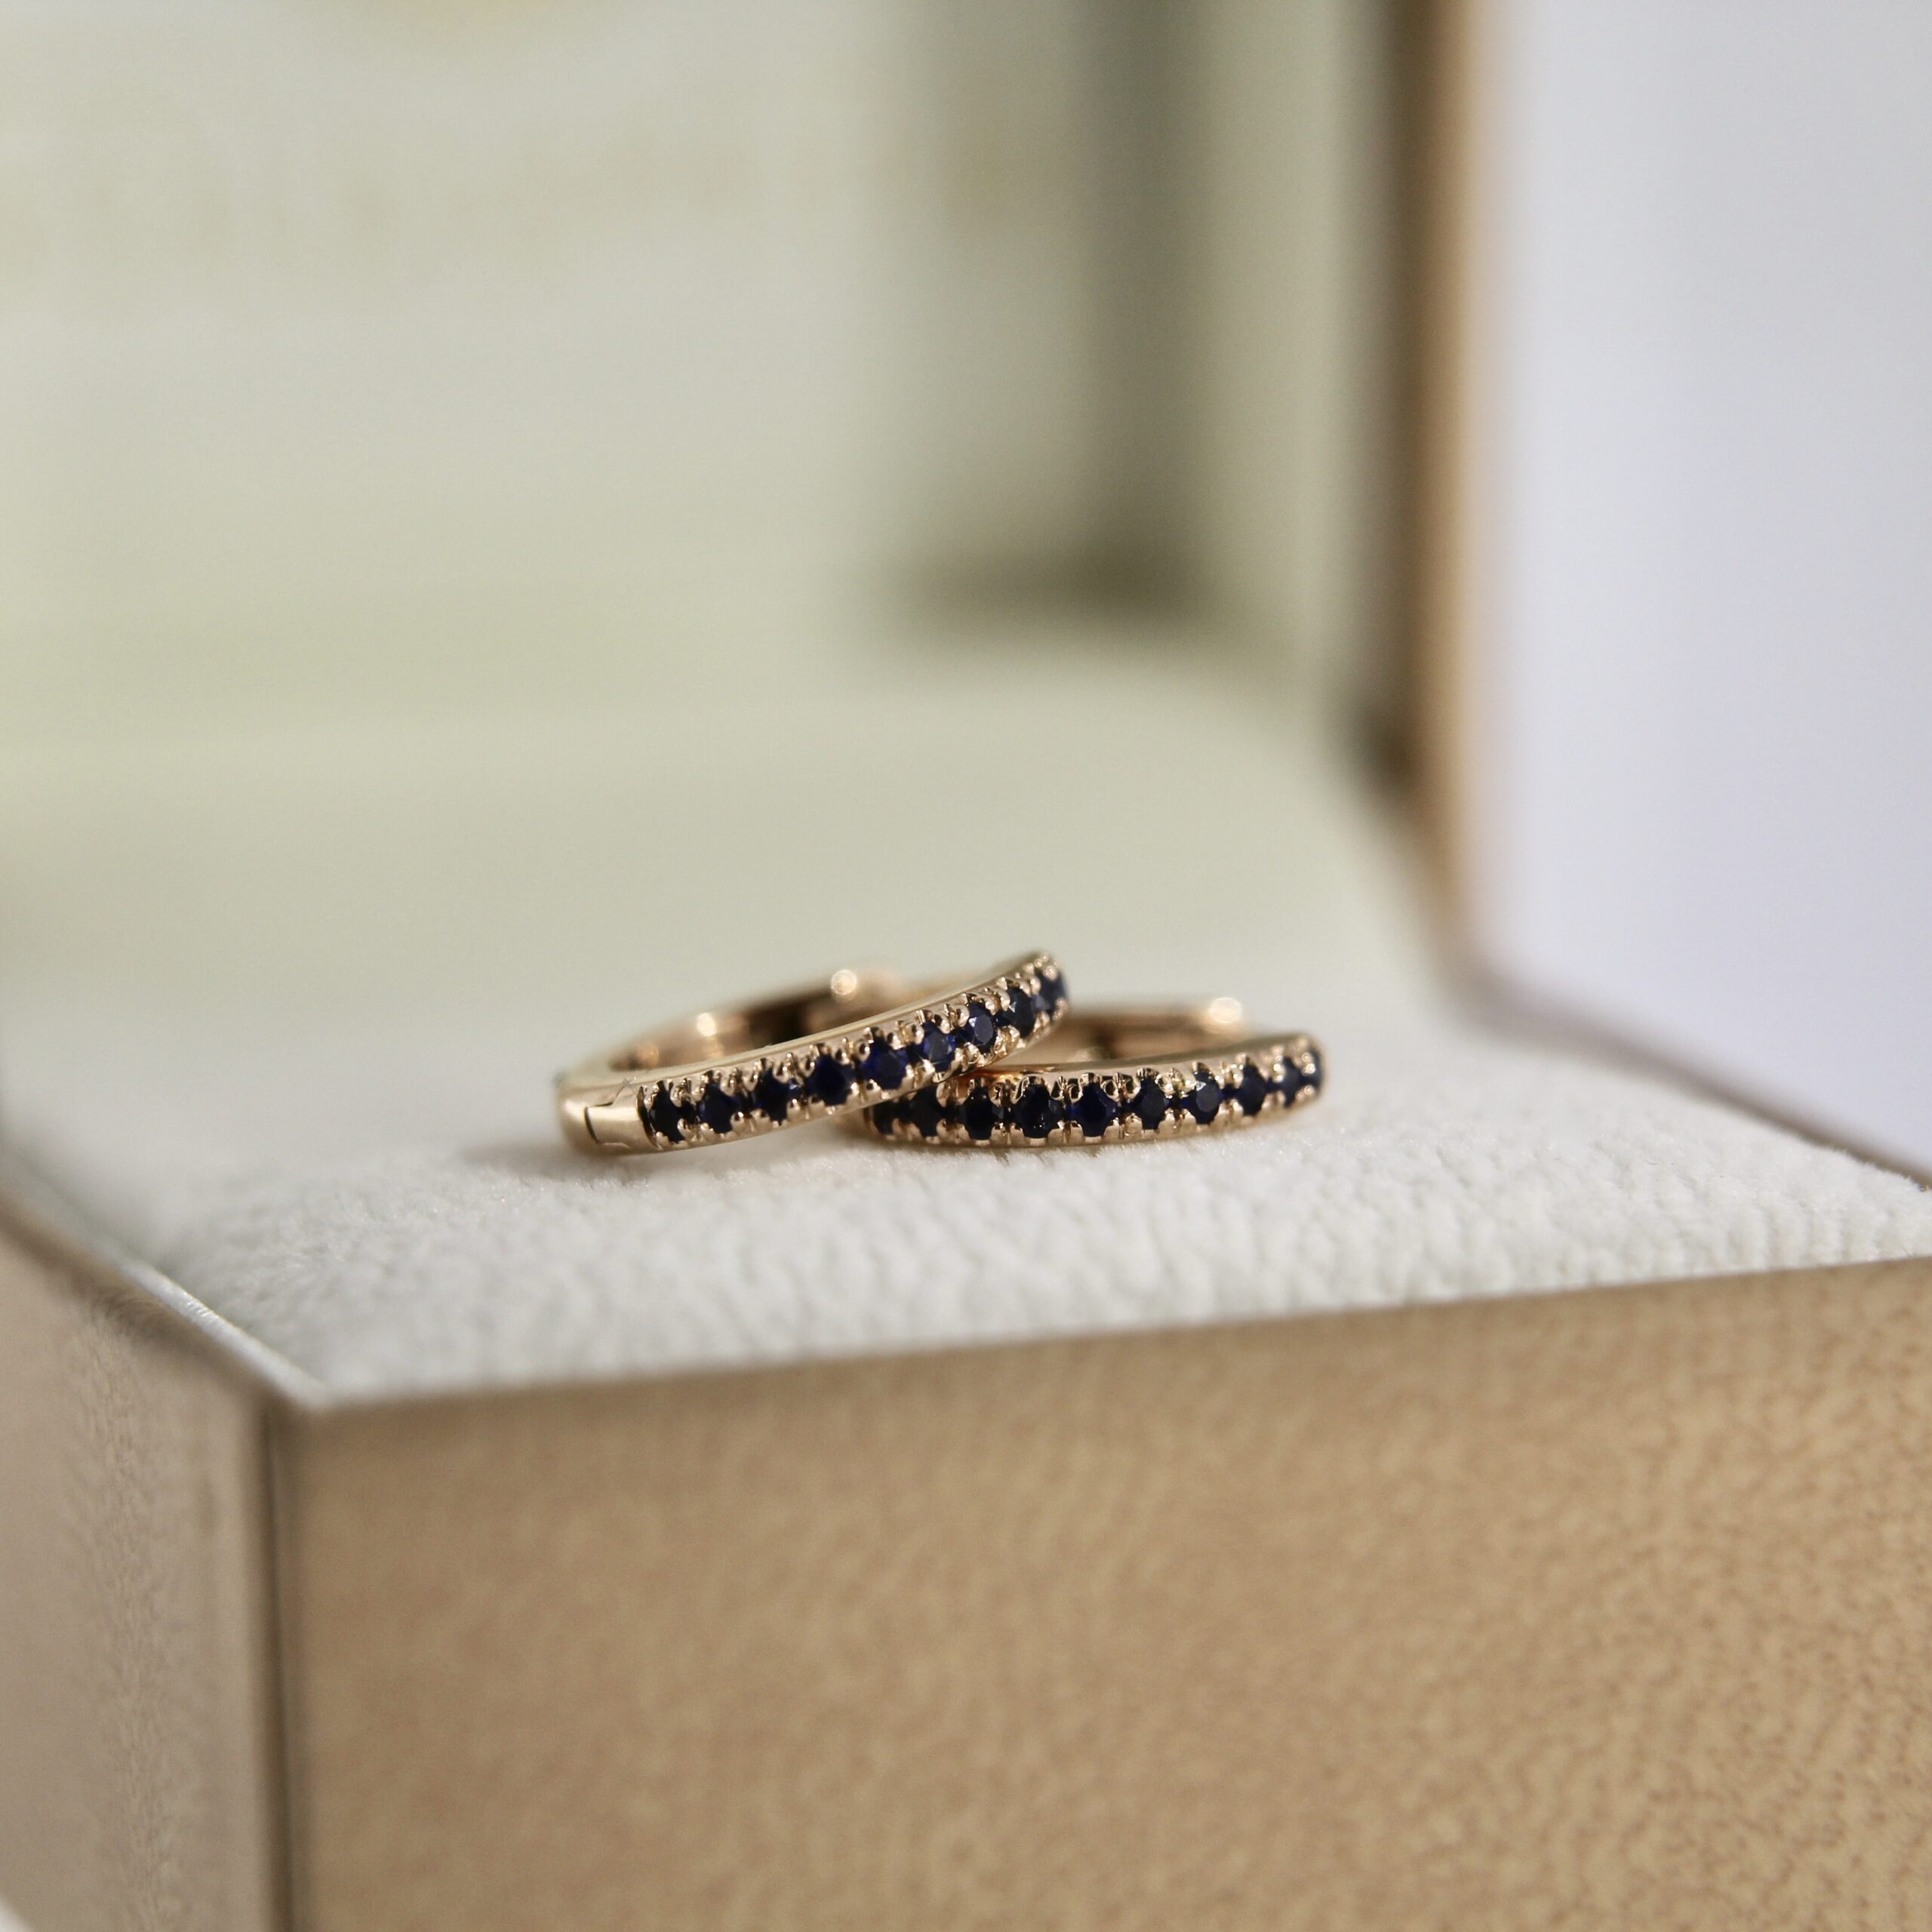 Sapphire Gold Earrings